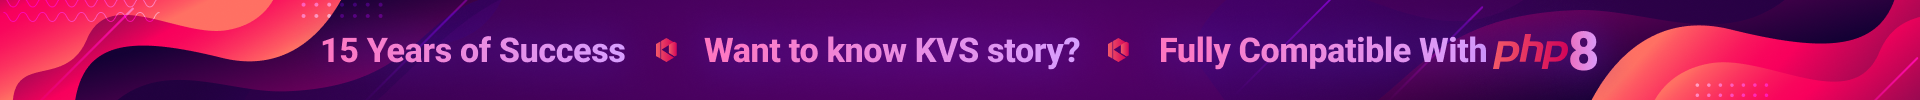 KVS Order